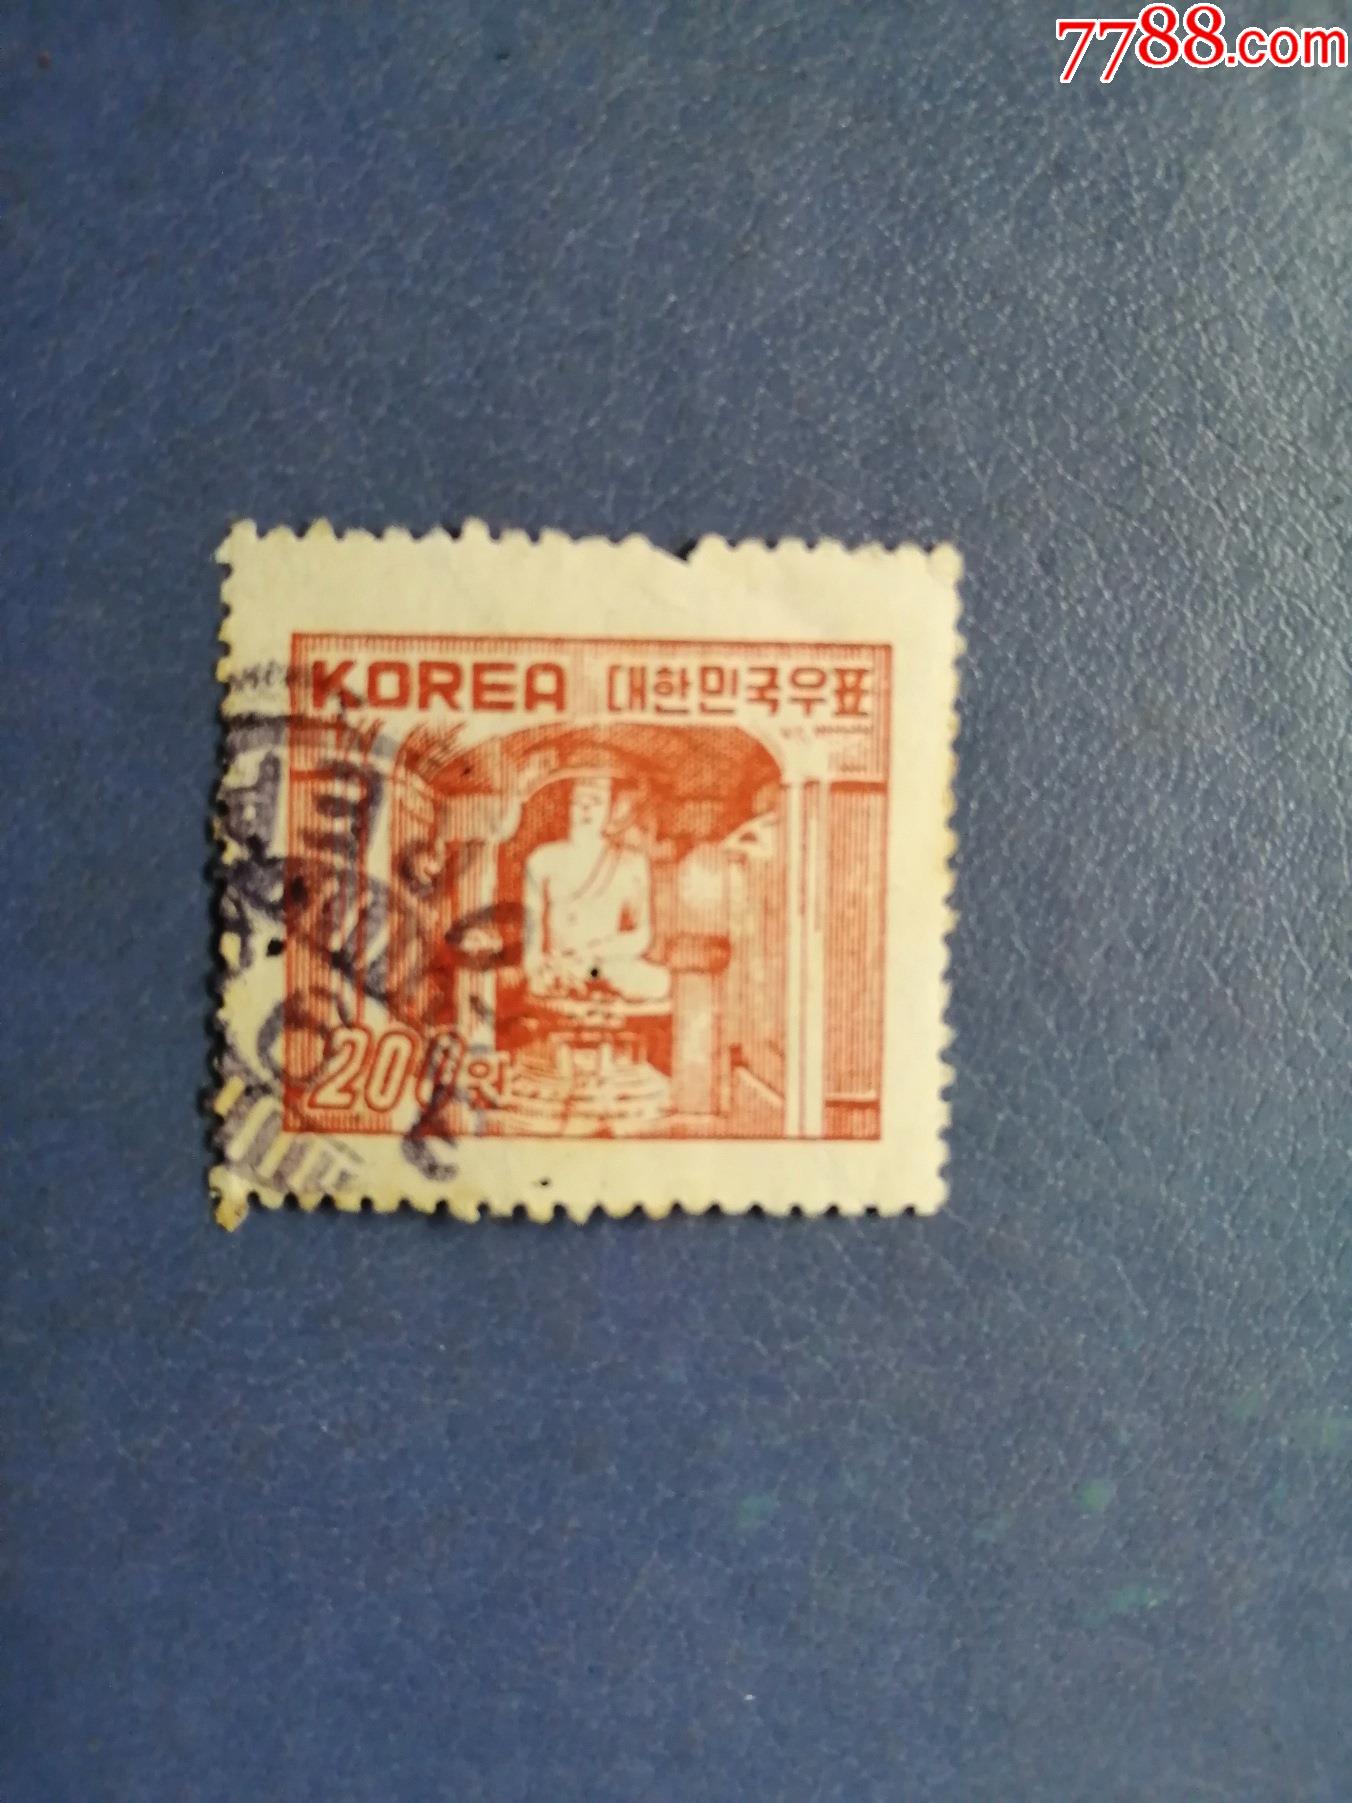 韩国邮票价格表图片图片